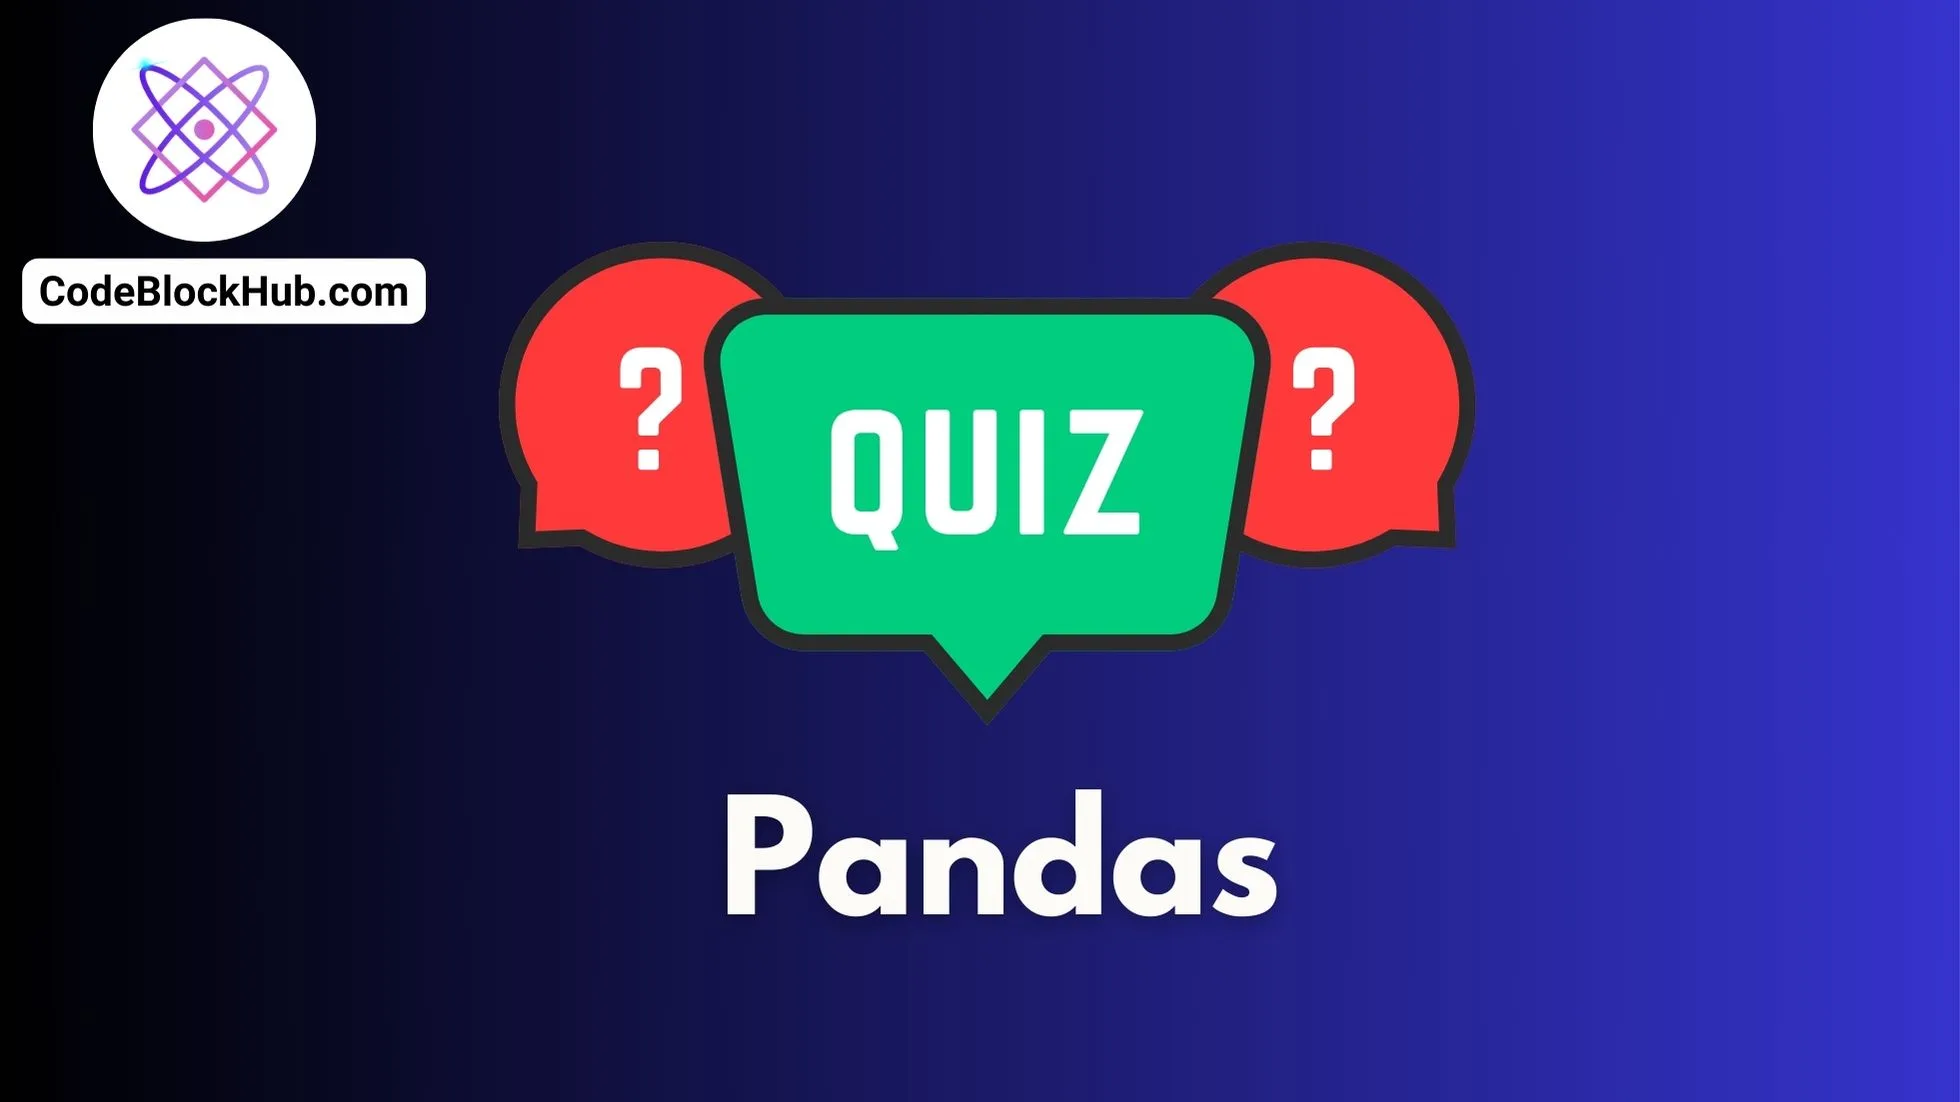 Quiz for Pandas